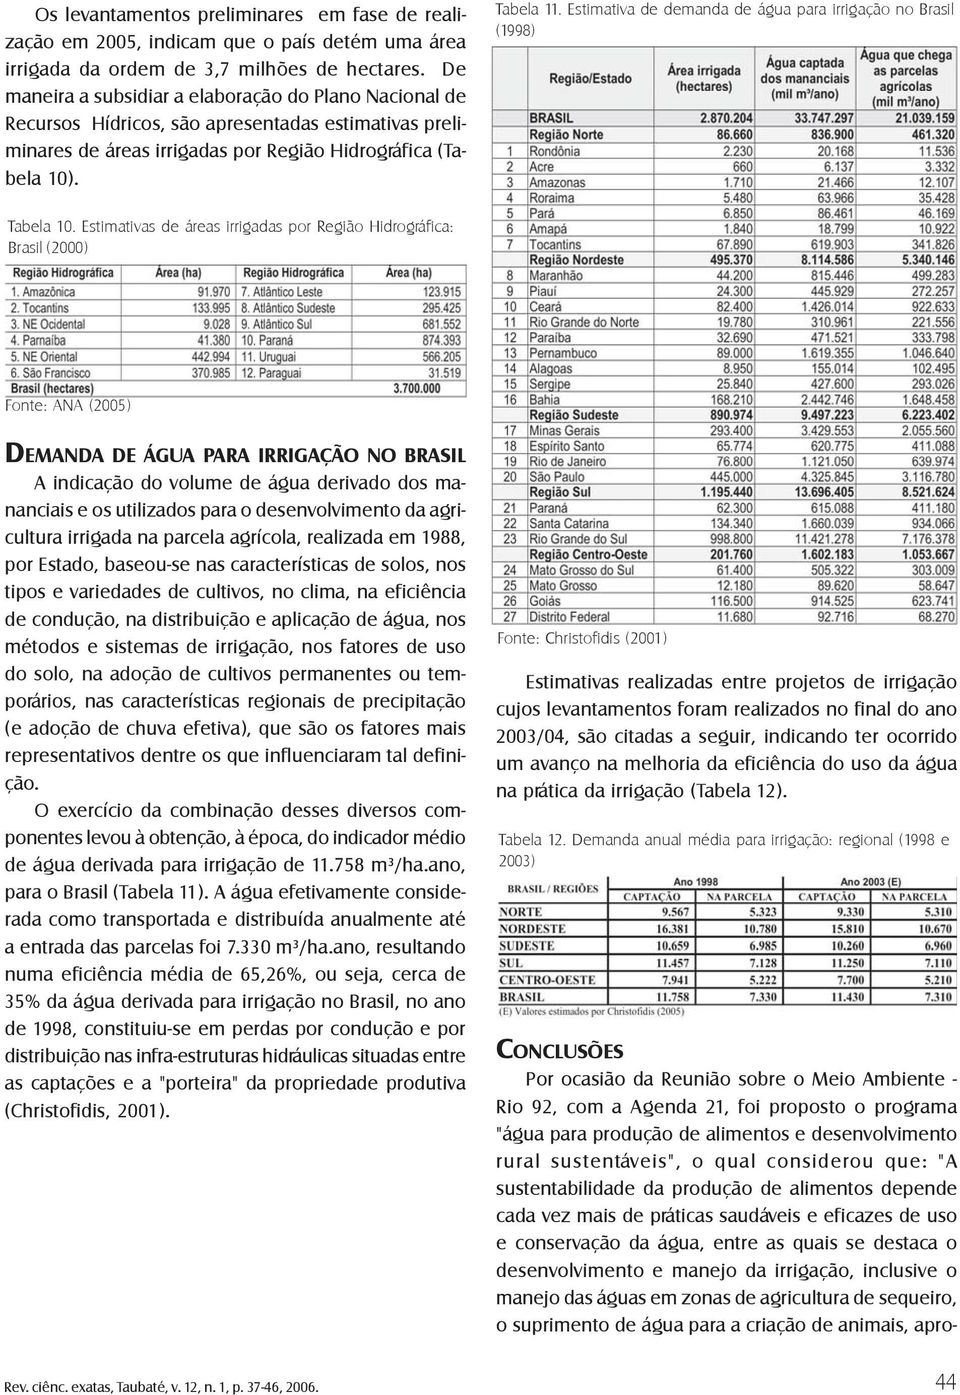 Estimativa de demanda de água para irrigação no Brasil (1998) Tabela 10.